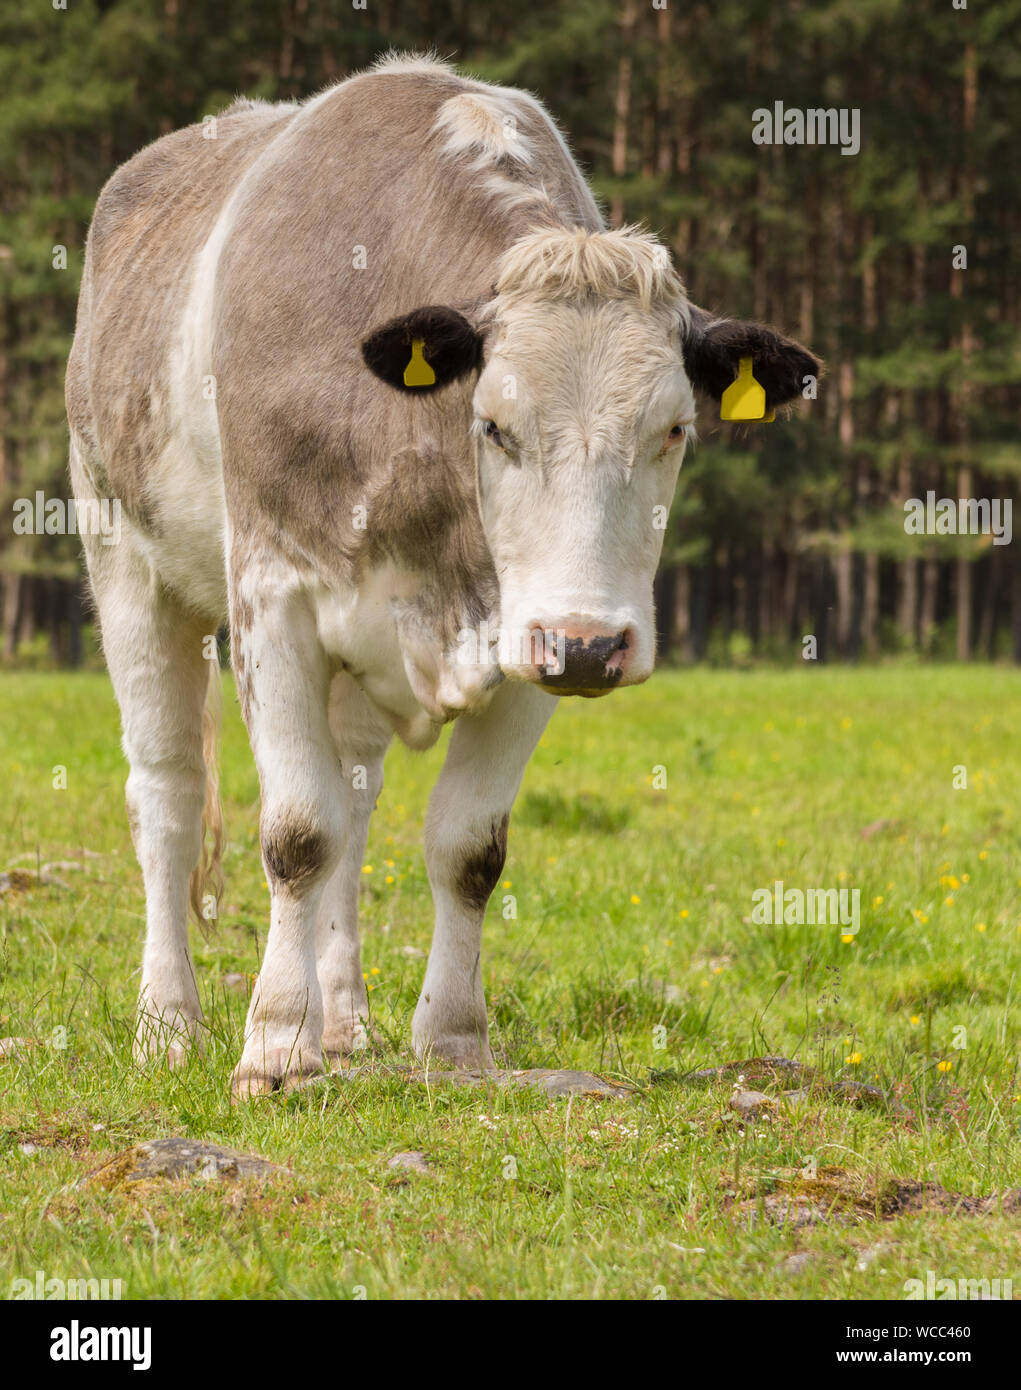 Einzelne Kuh schaut ein wenig traurig, als sie außerhalb in einem Feld in ländlichen Schottland steht Stockfoto